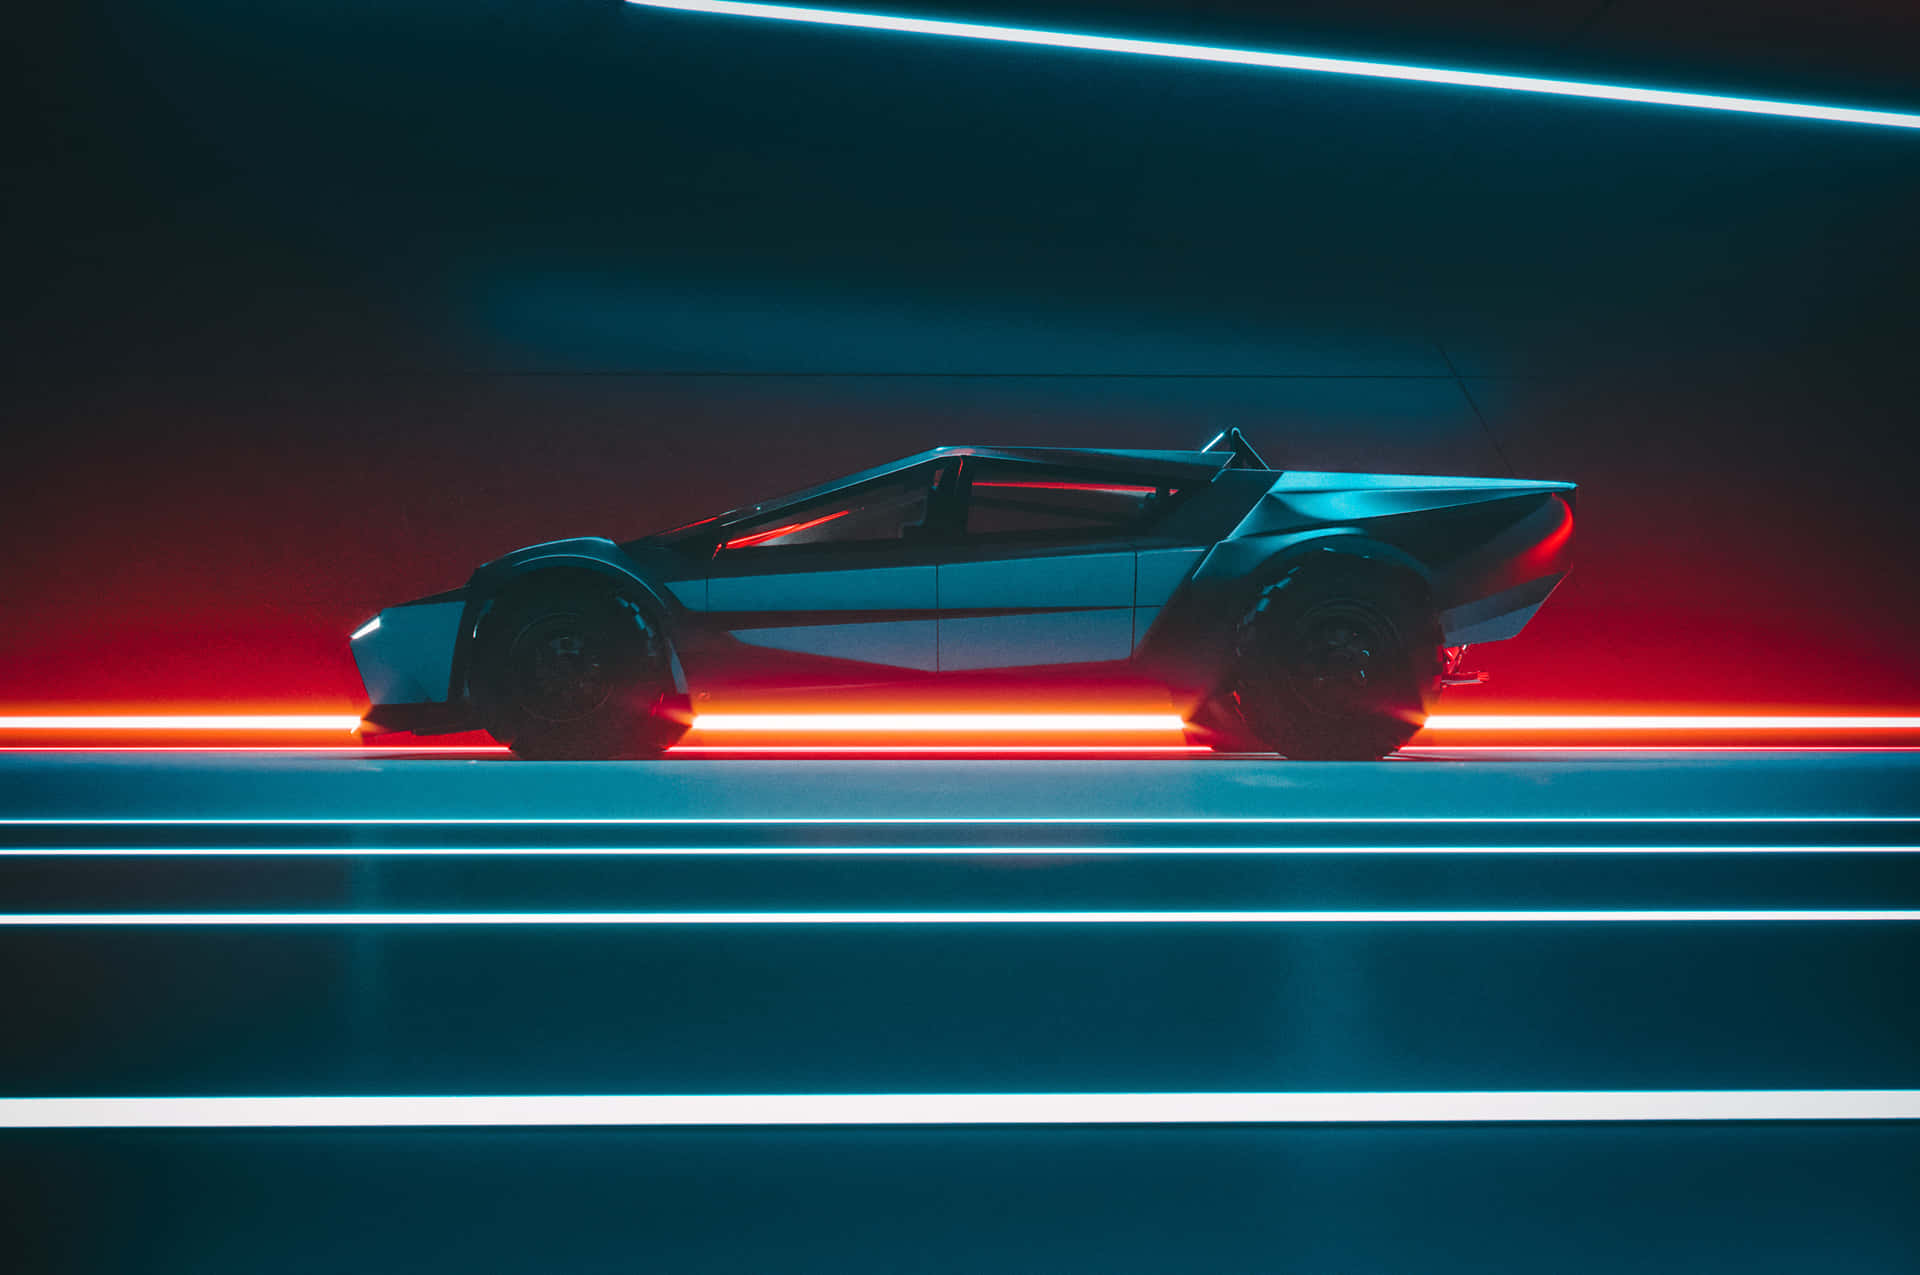 Un'autofuturistica In Un Tunnel Illuminato Al Neon